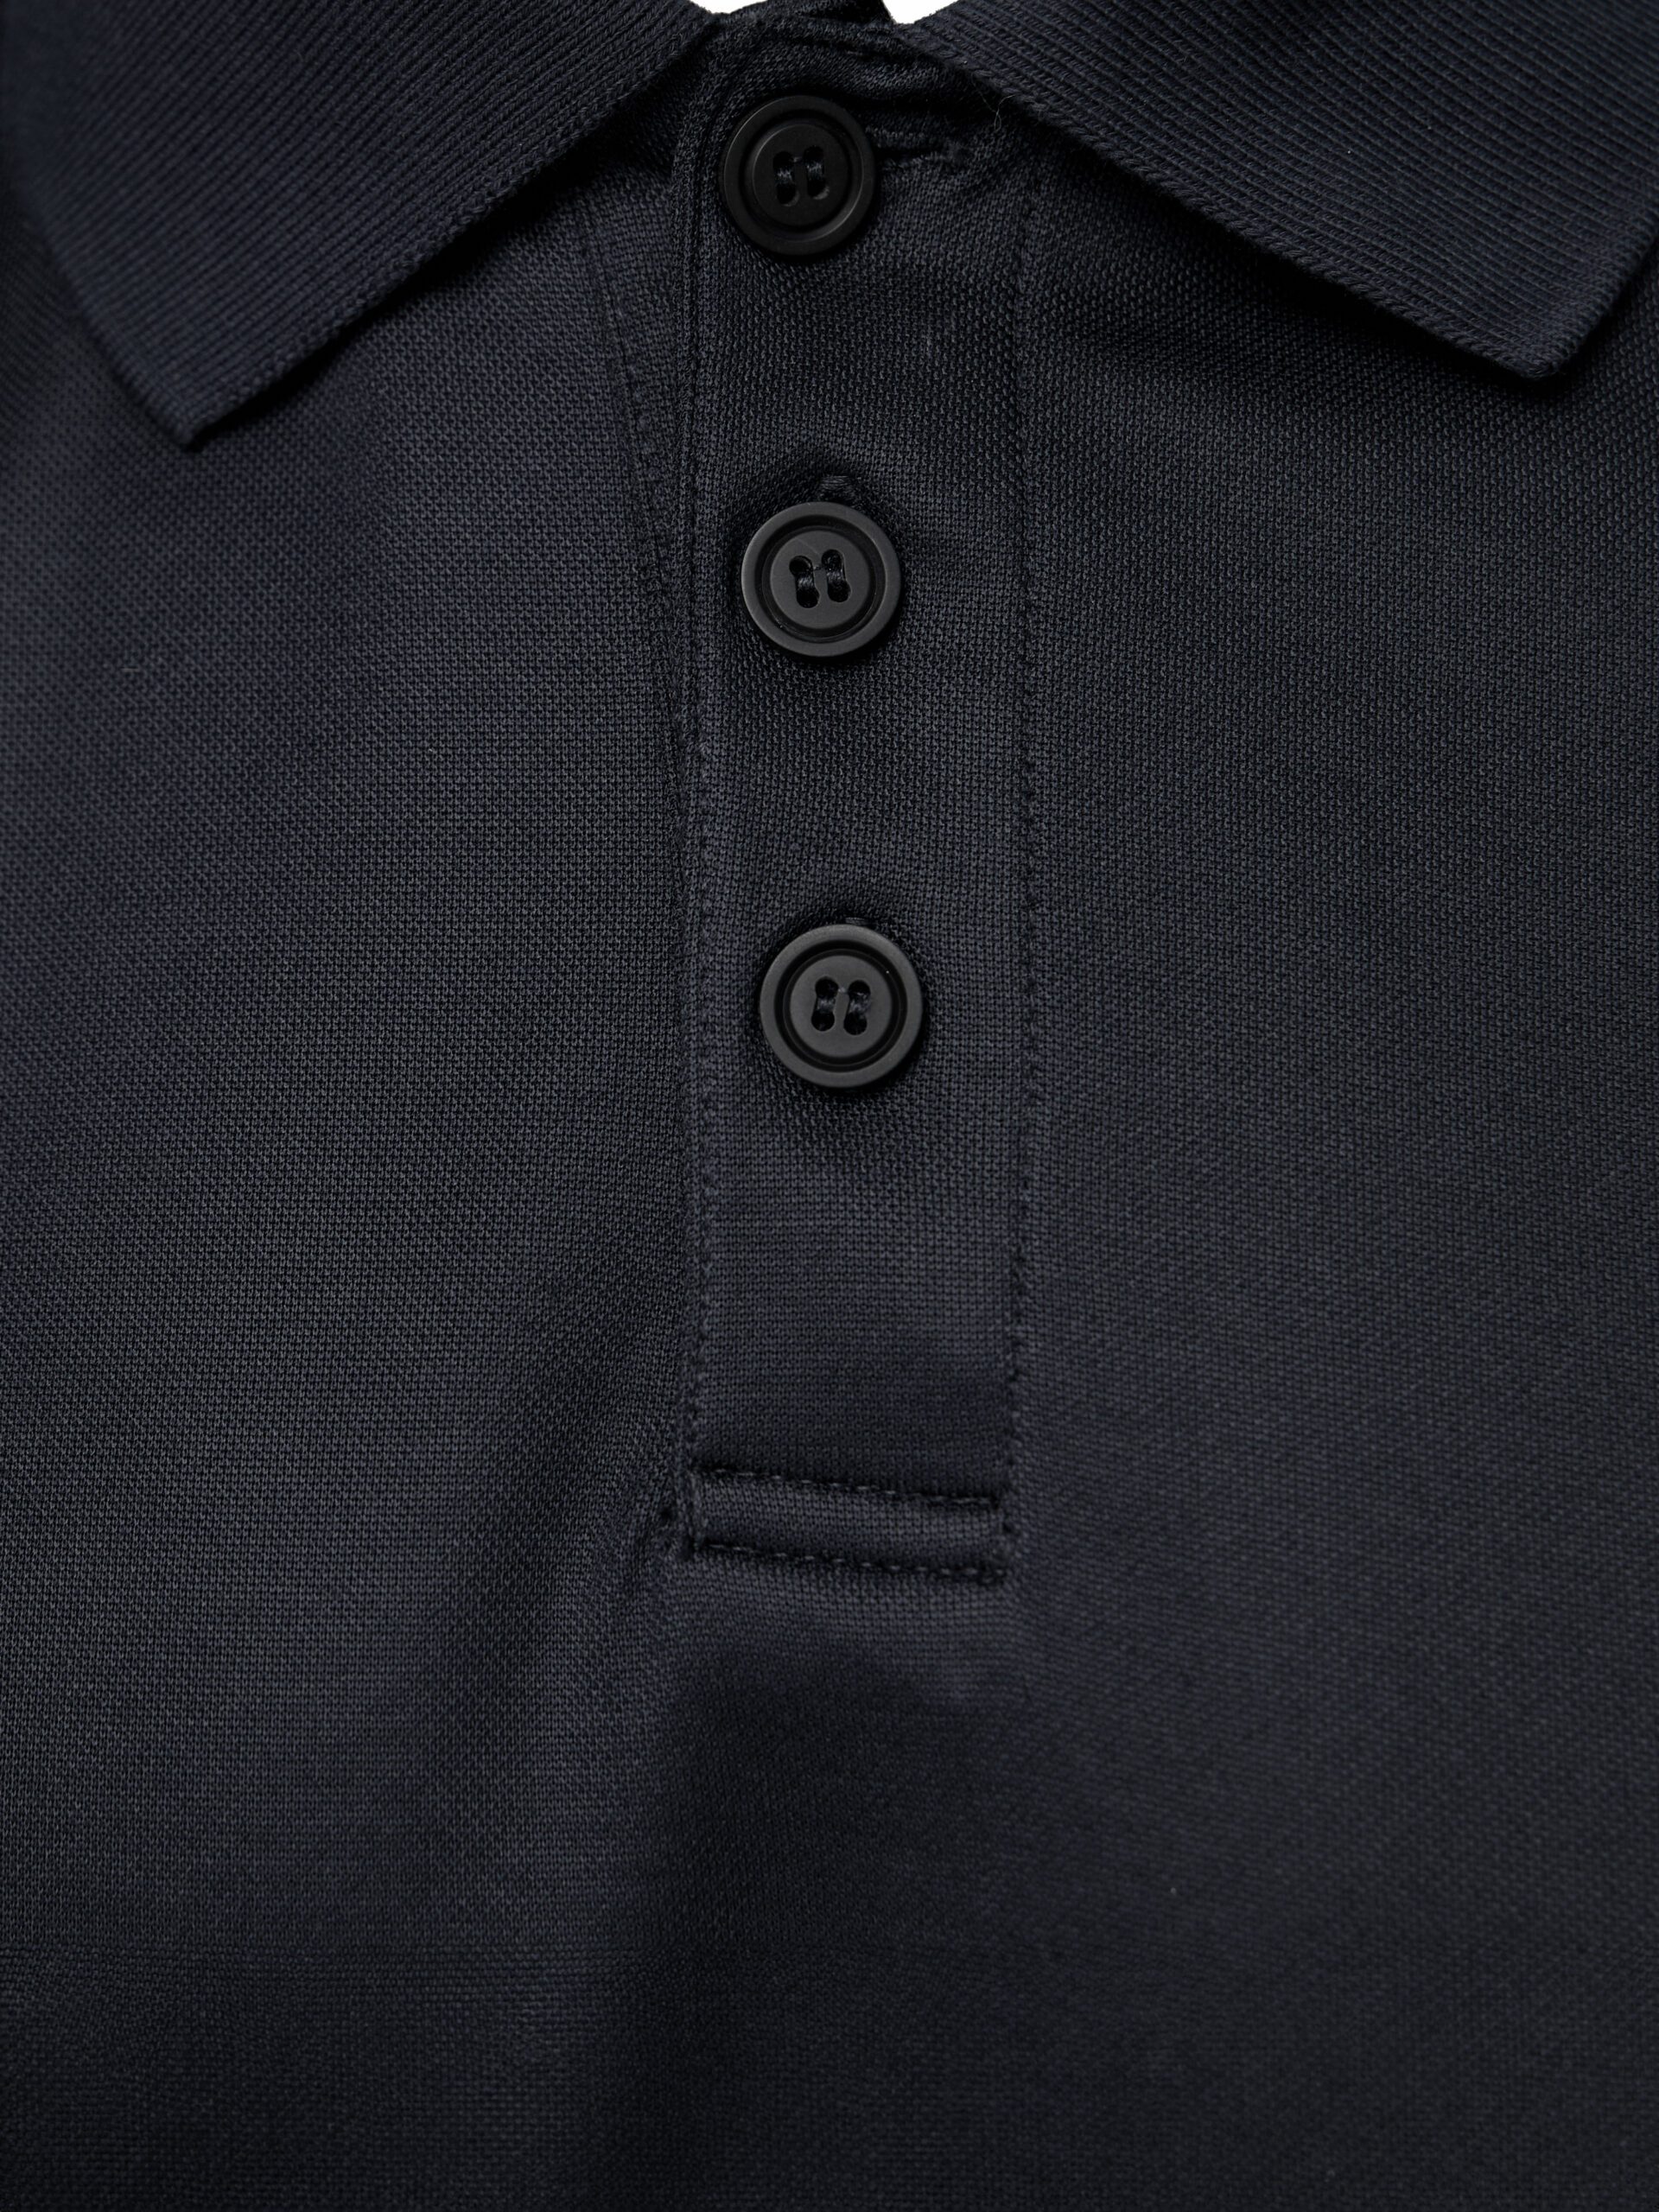 PUMA Workwear Essentials Men\'s Polo Shirt | PUMA Workwear